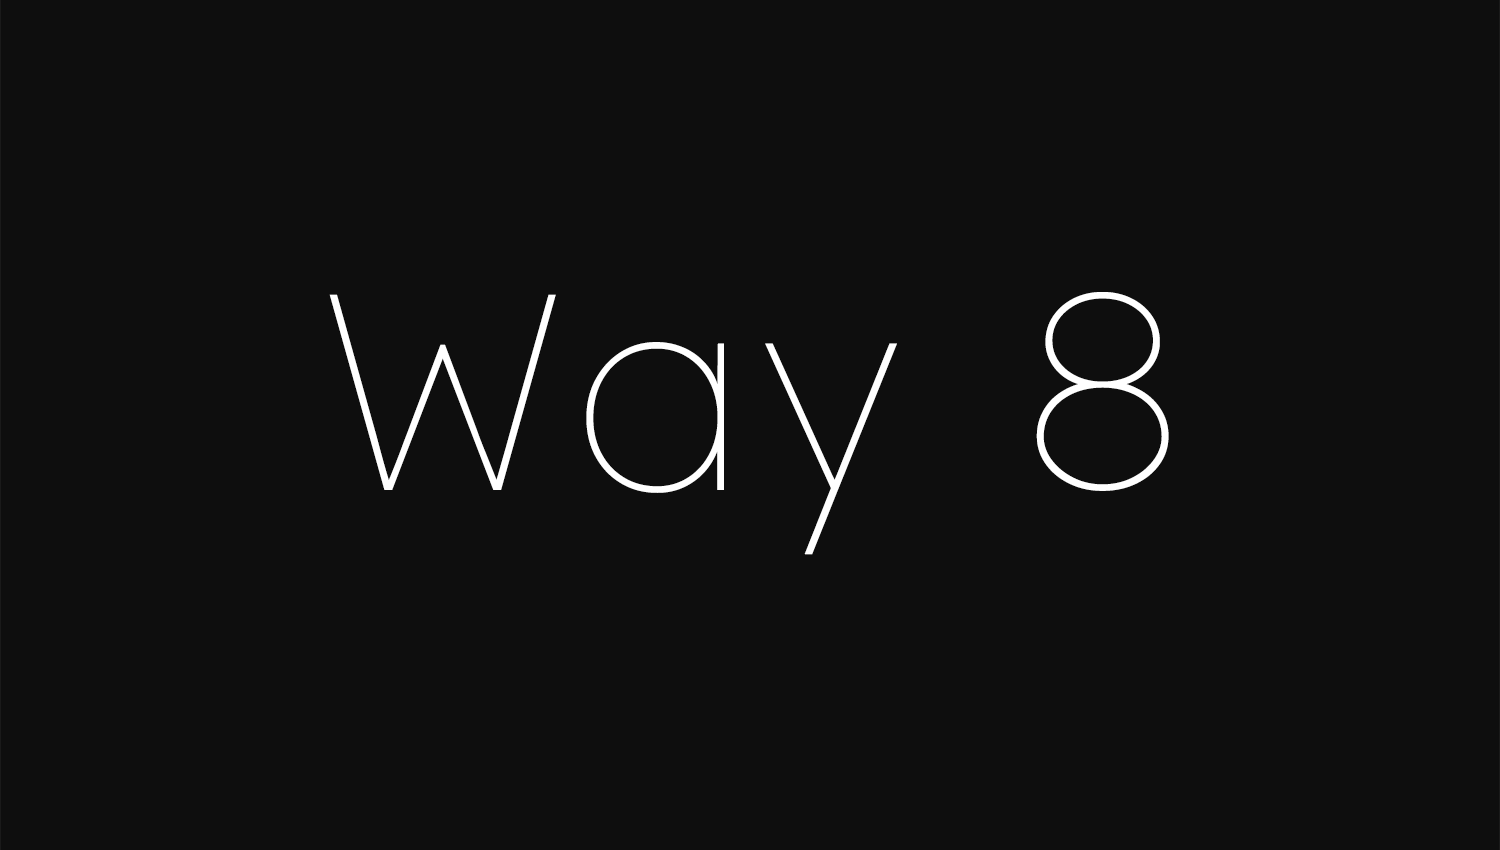 Way 8